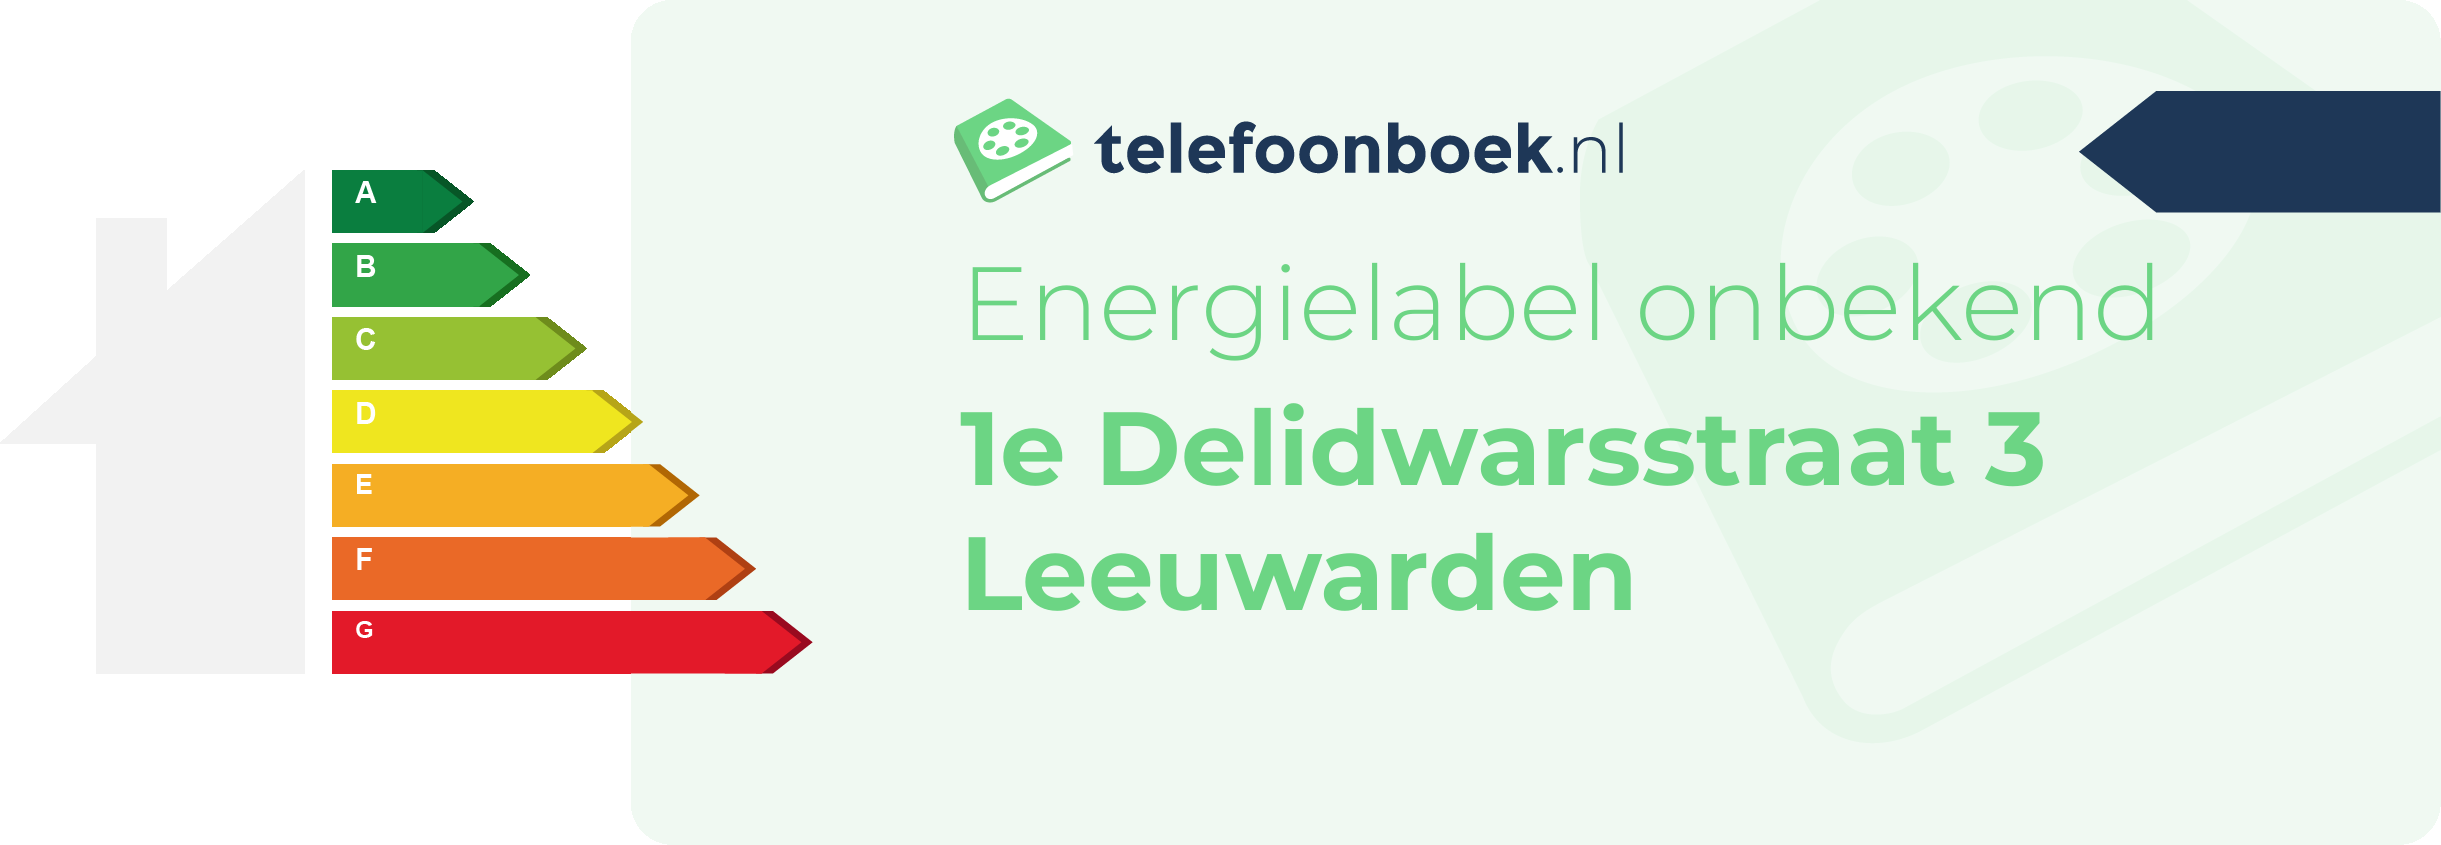 Energielabel 1e Delidwarsstraat 3 Leeuwarden